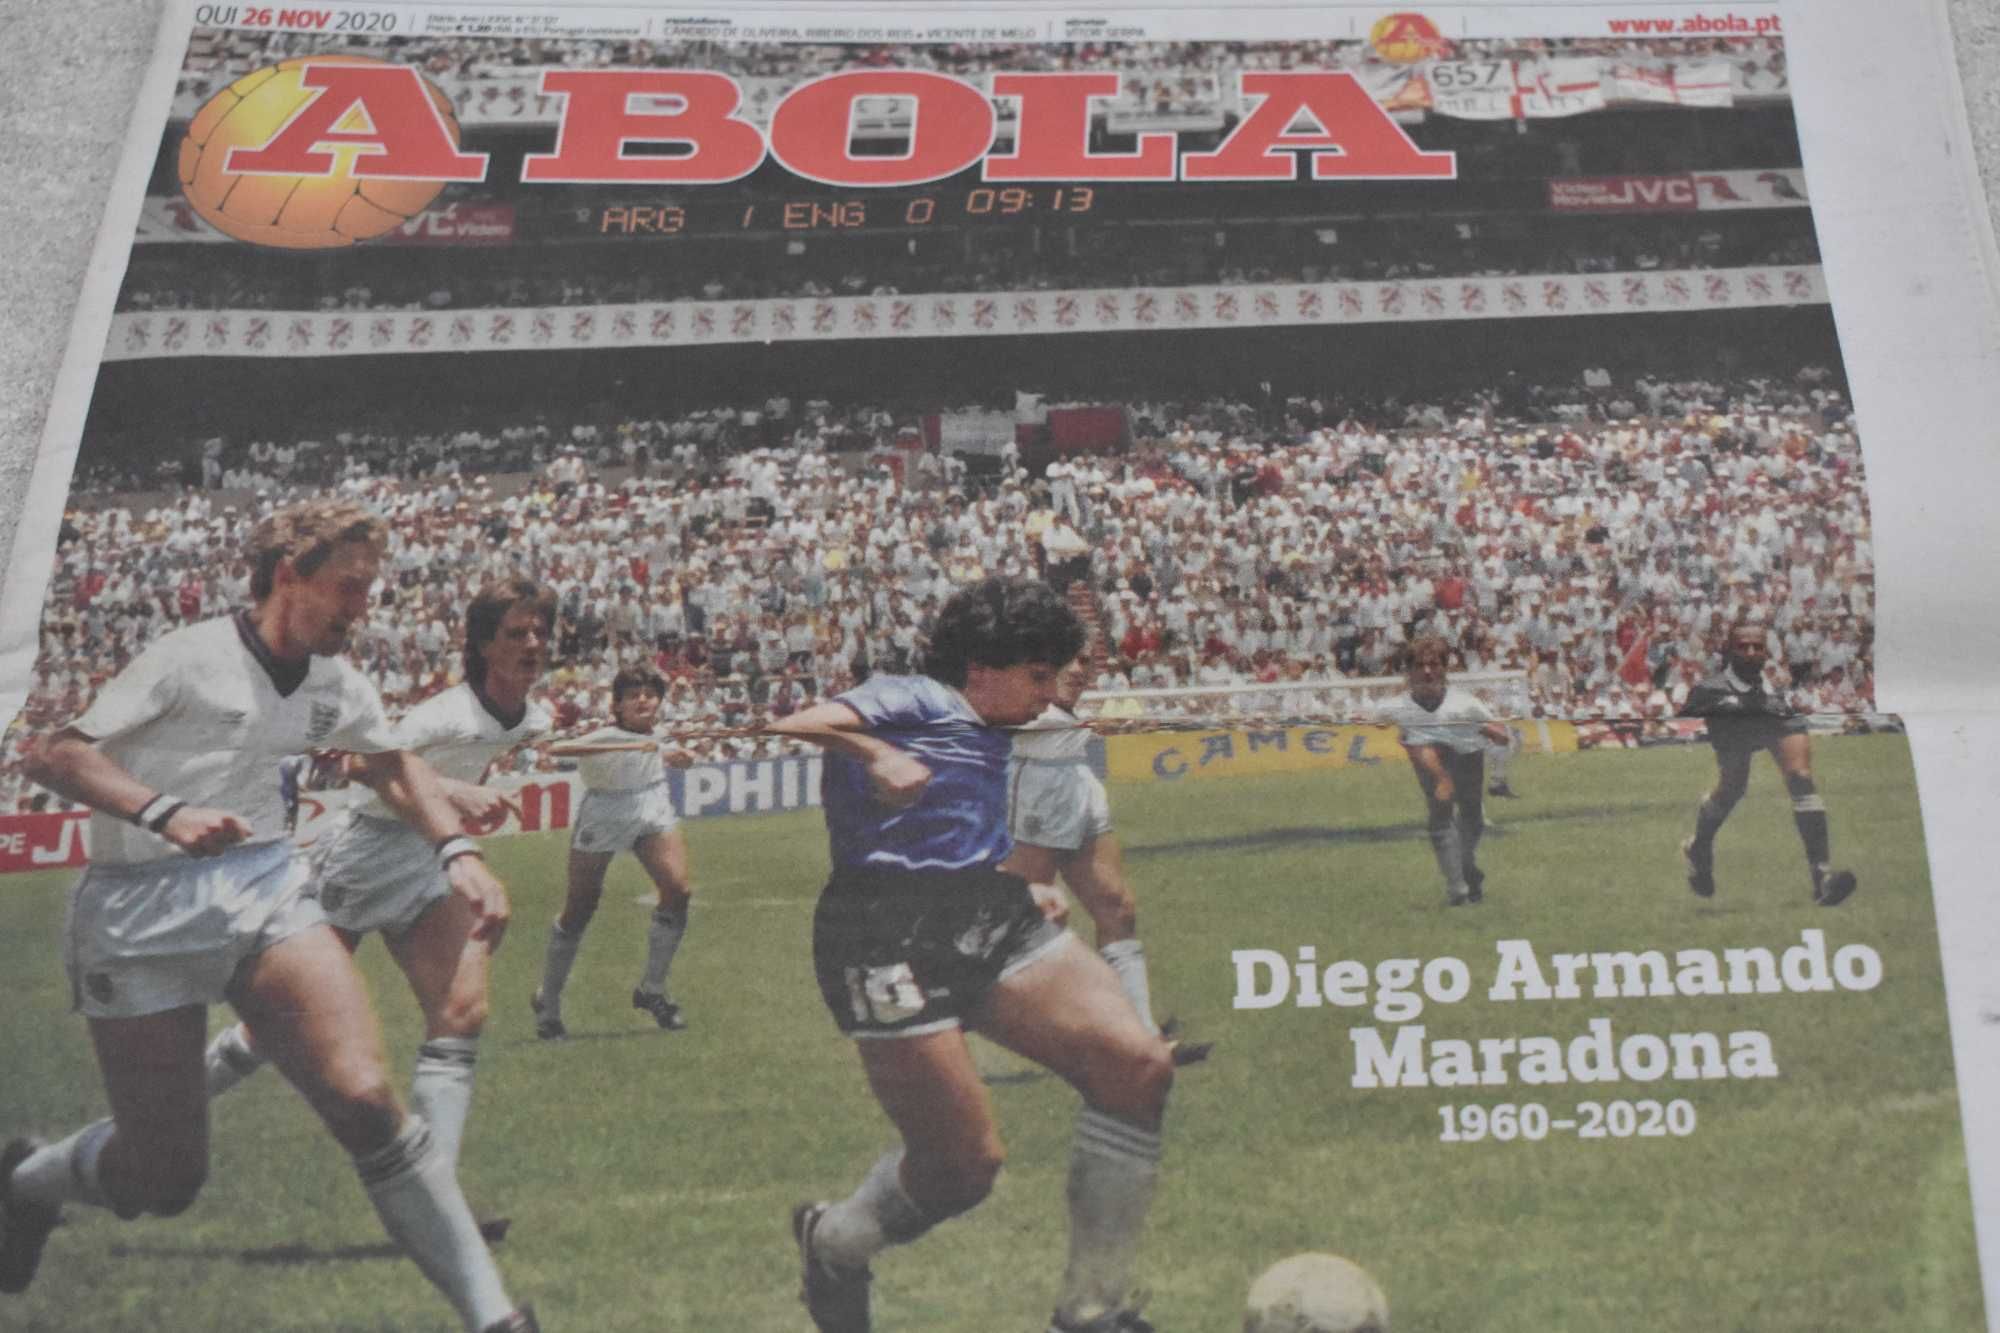 Vendo jornal A Bola 26 Novembro 2020 (falecimento Diego Maradona)